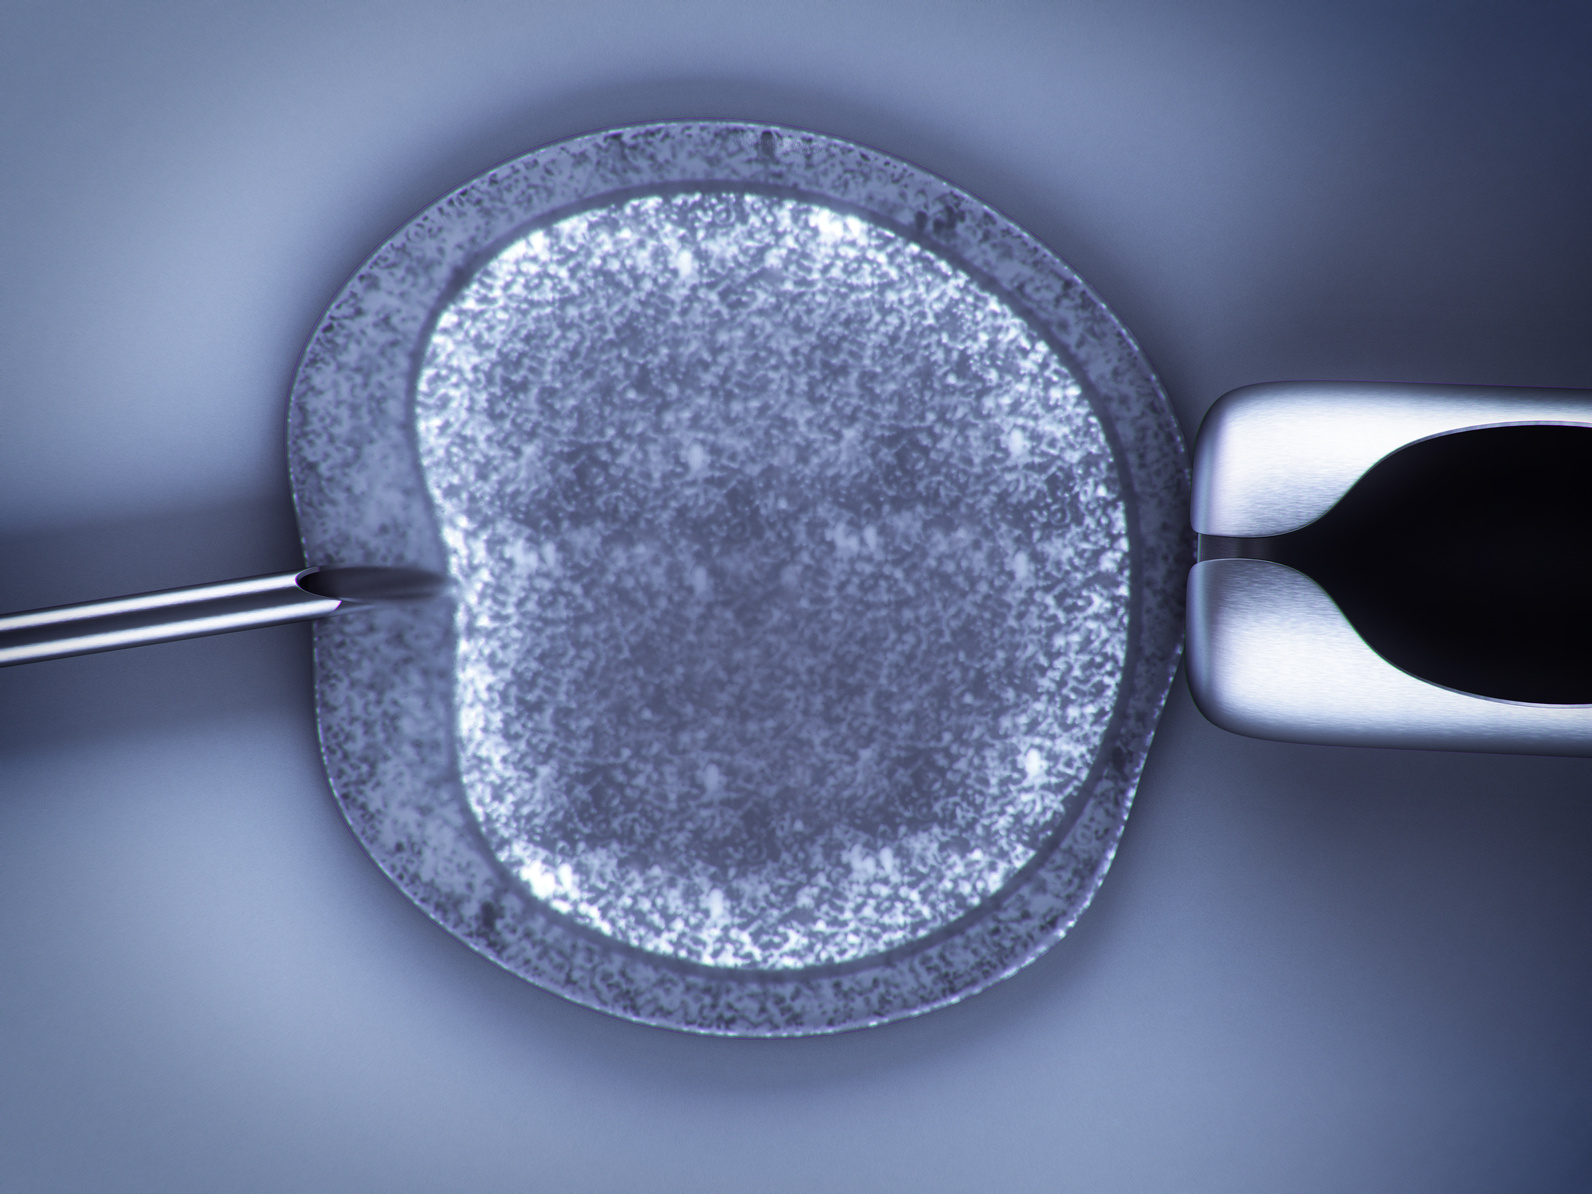 ¿Habrá perjudicado algo a los embriones que me han transferido?